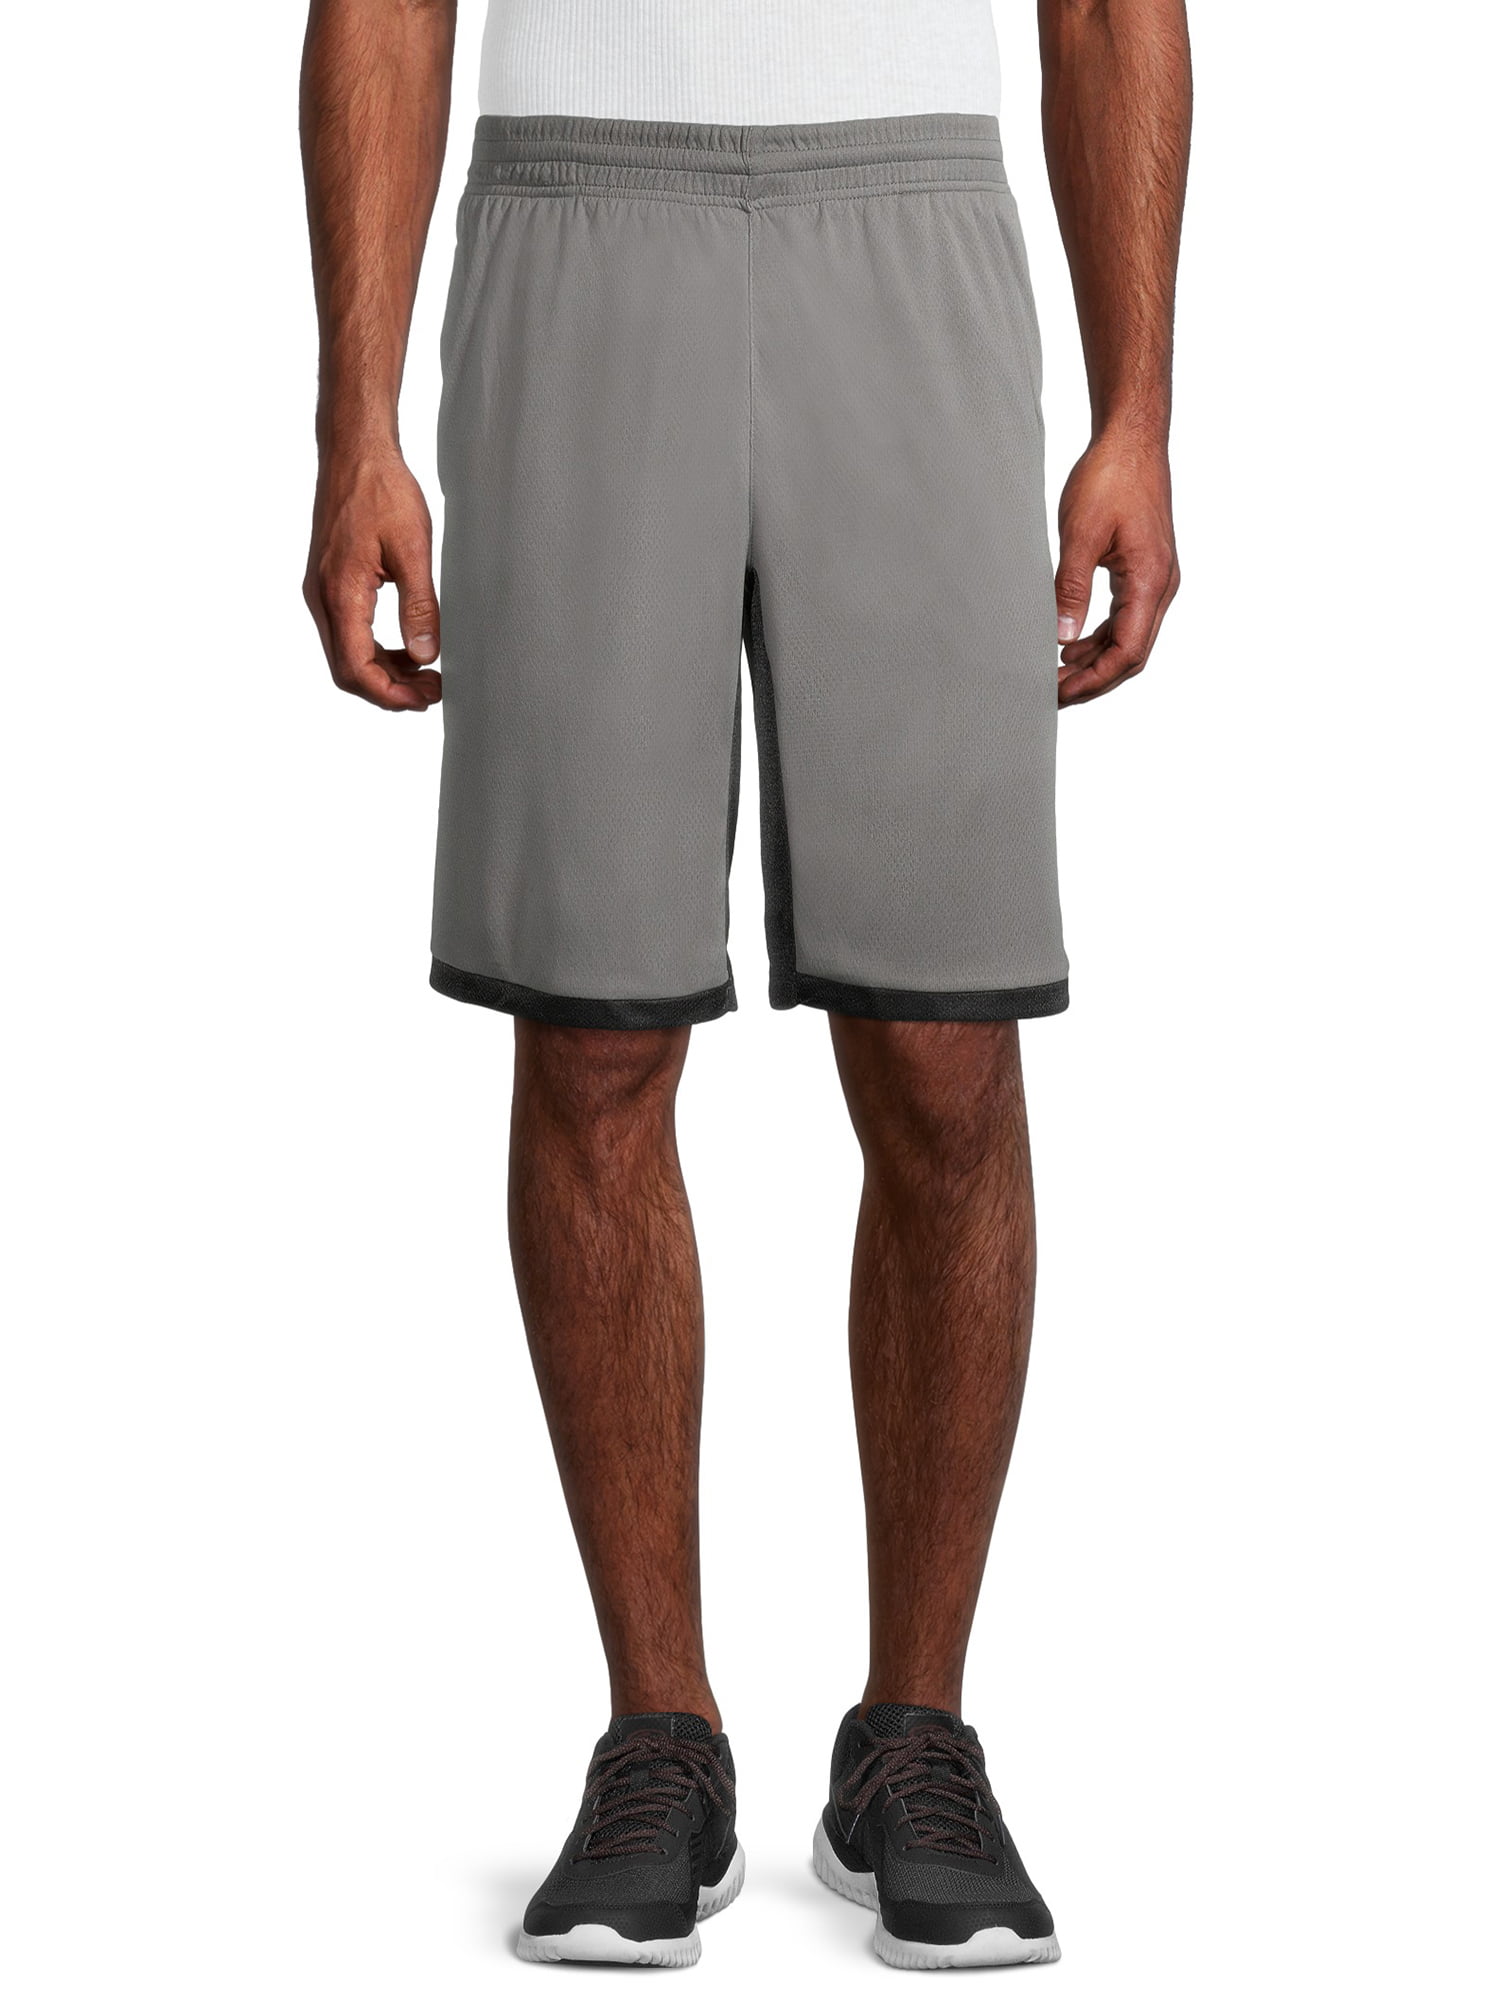 AL1VE Men's Classic Basketball Shorts - Walmart.com